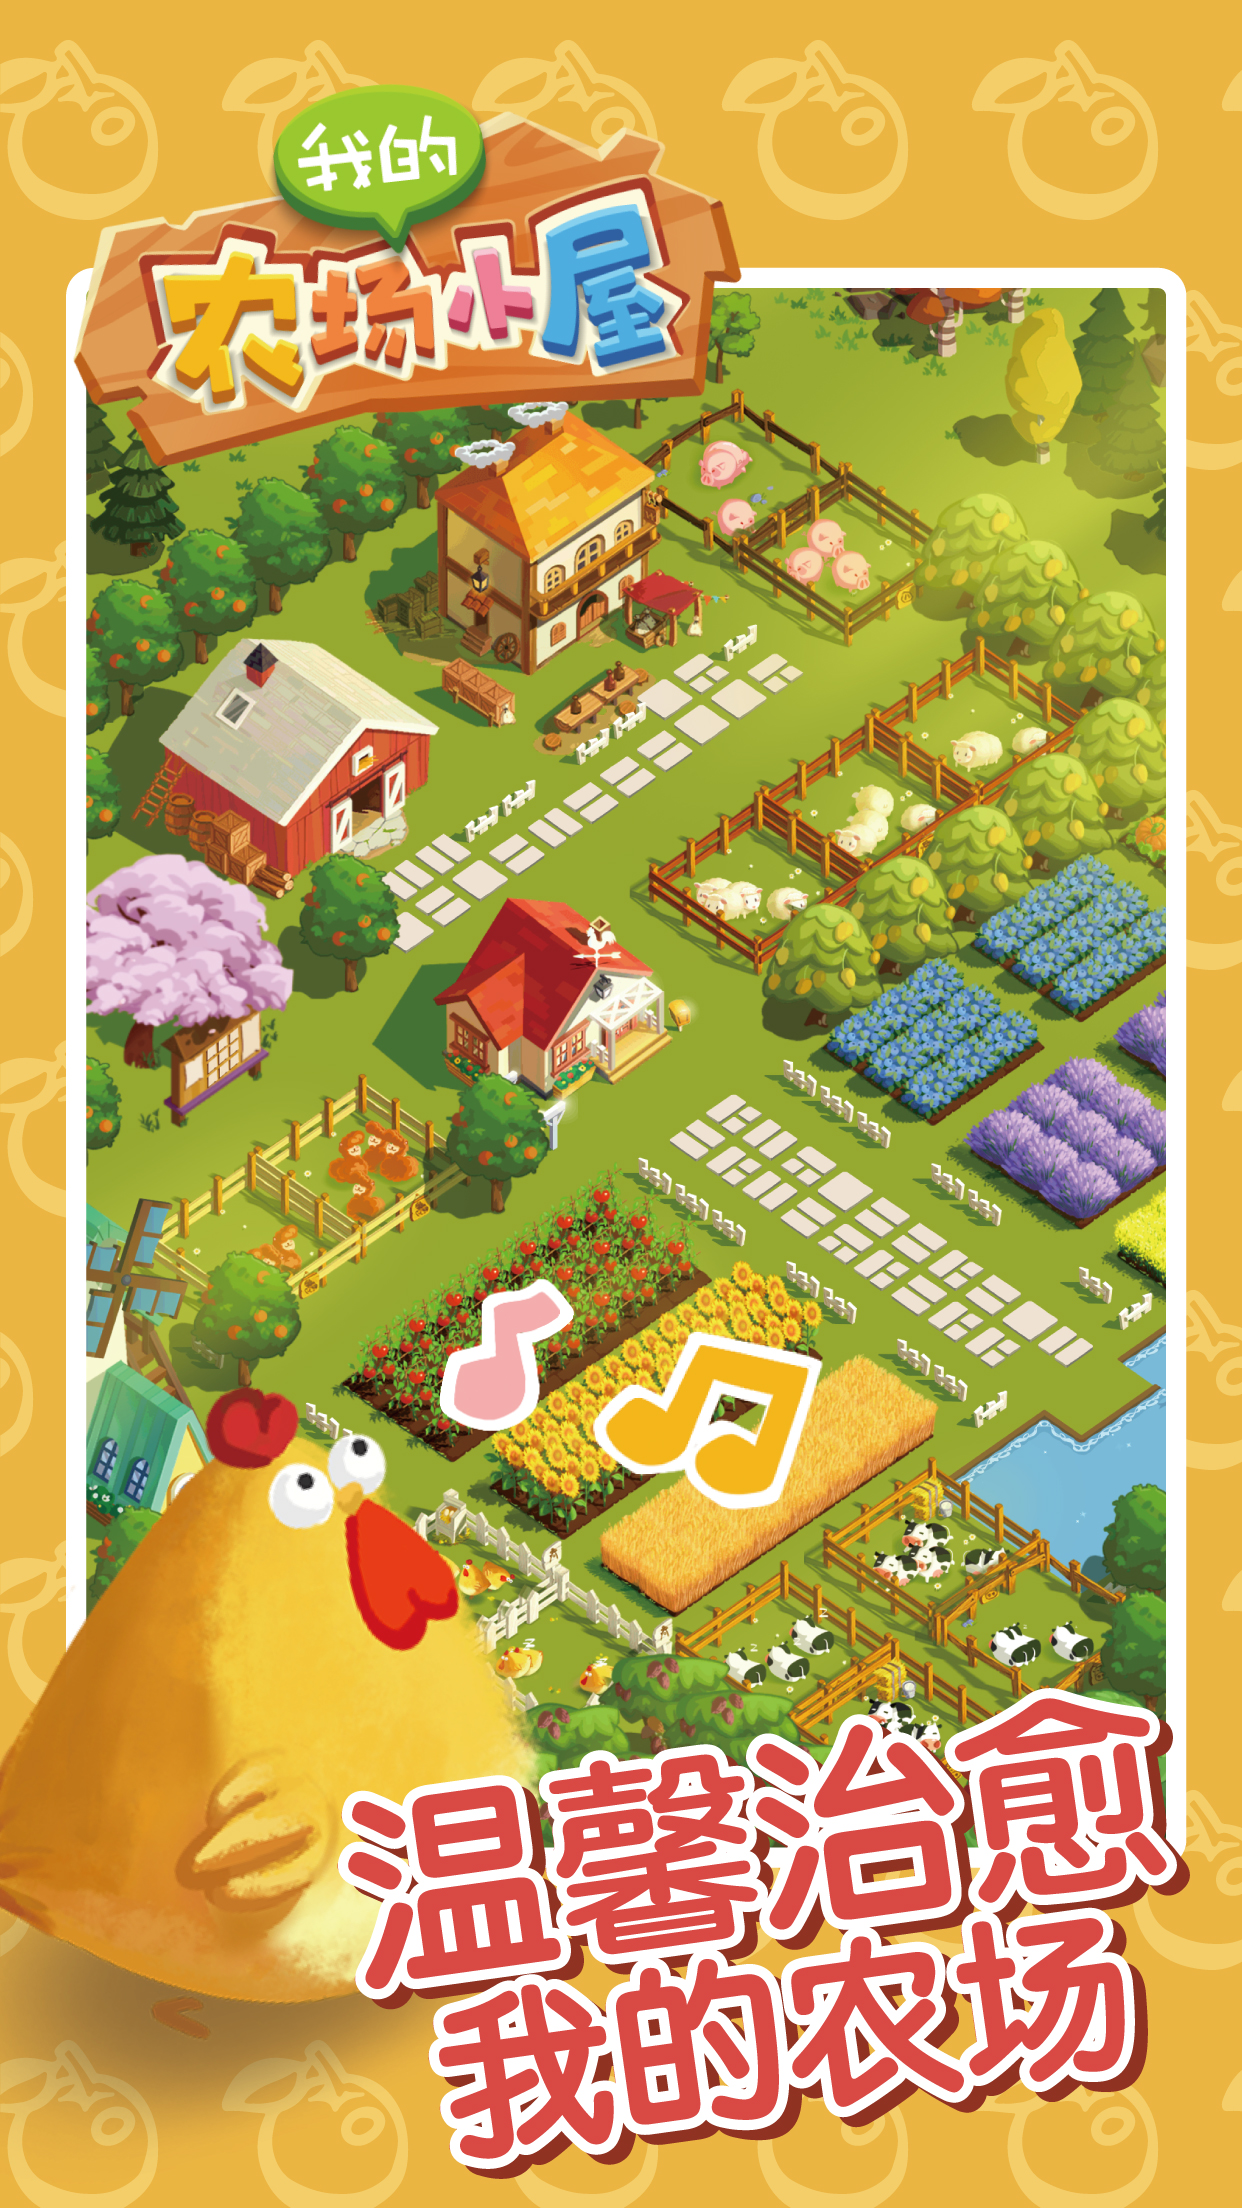 2020好玩的农场庄园类游戏推荐 成为庄园主根据喜好经营农场